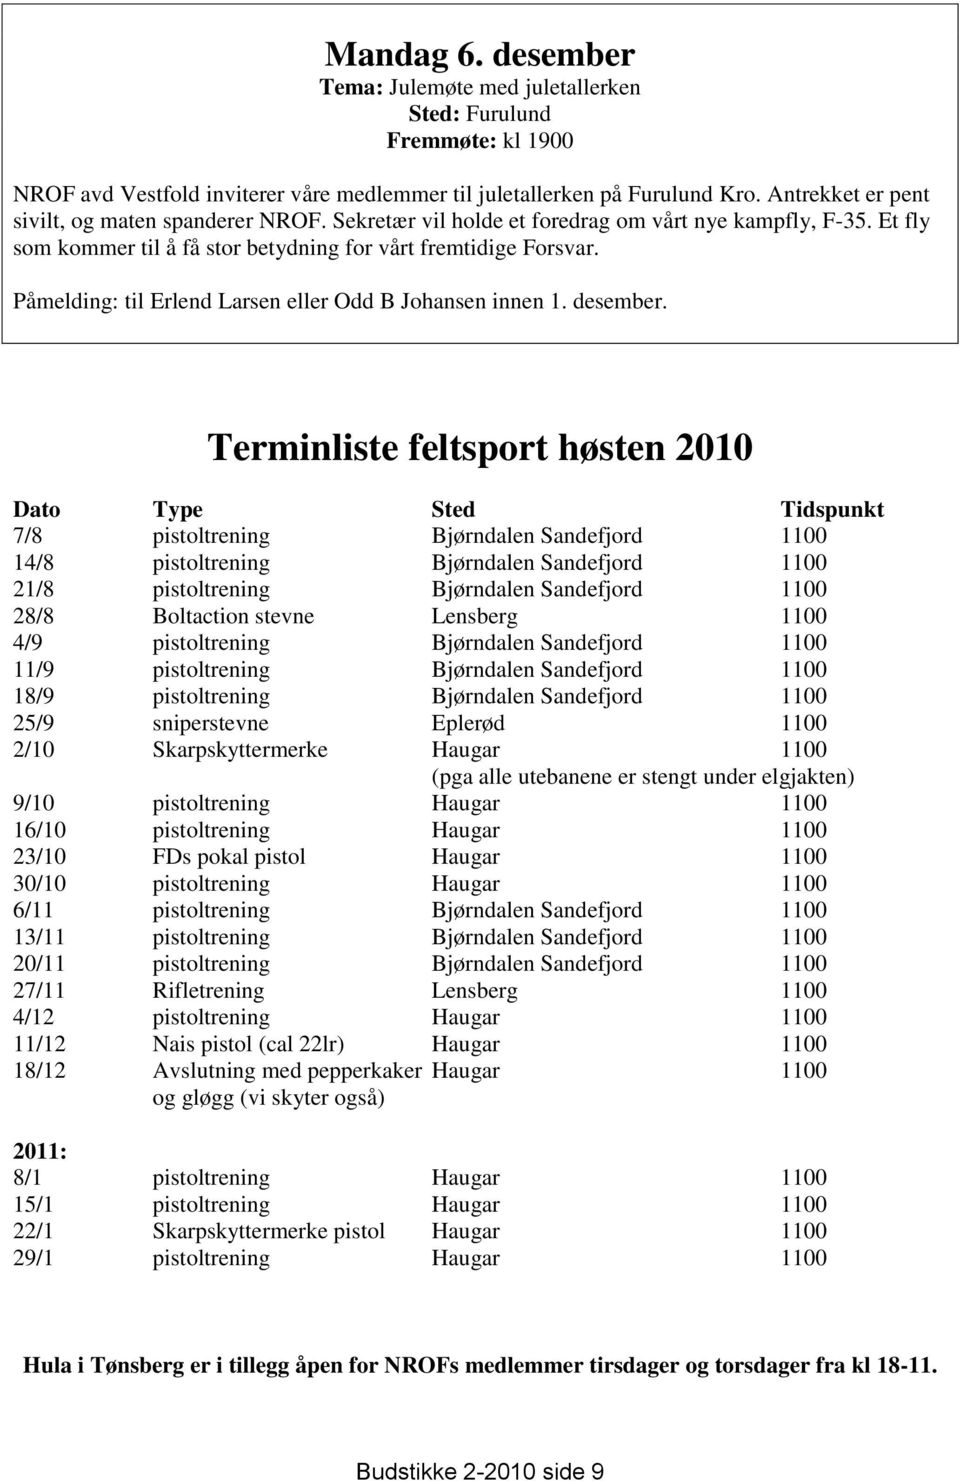 Påmelding: til Erlend Larsen eller Odd B Johansen innen 1. desember.